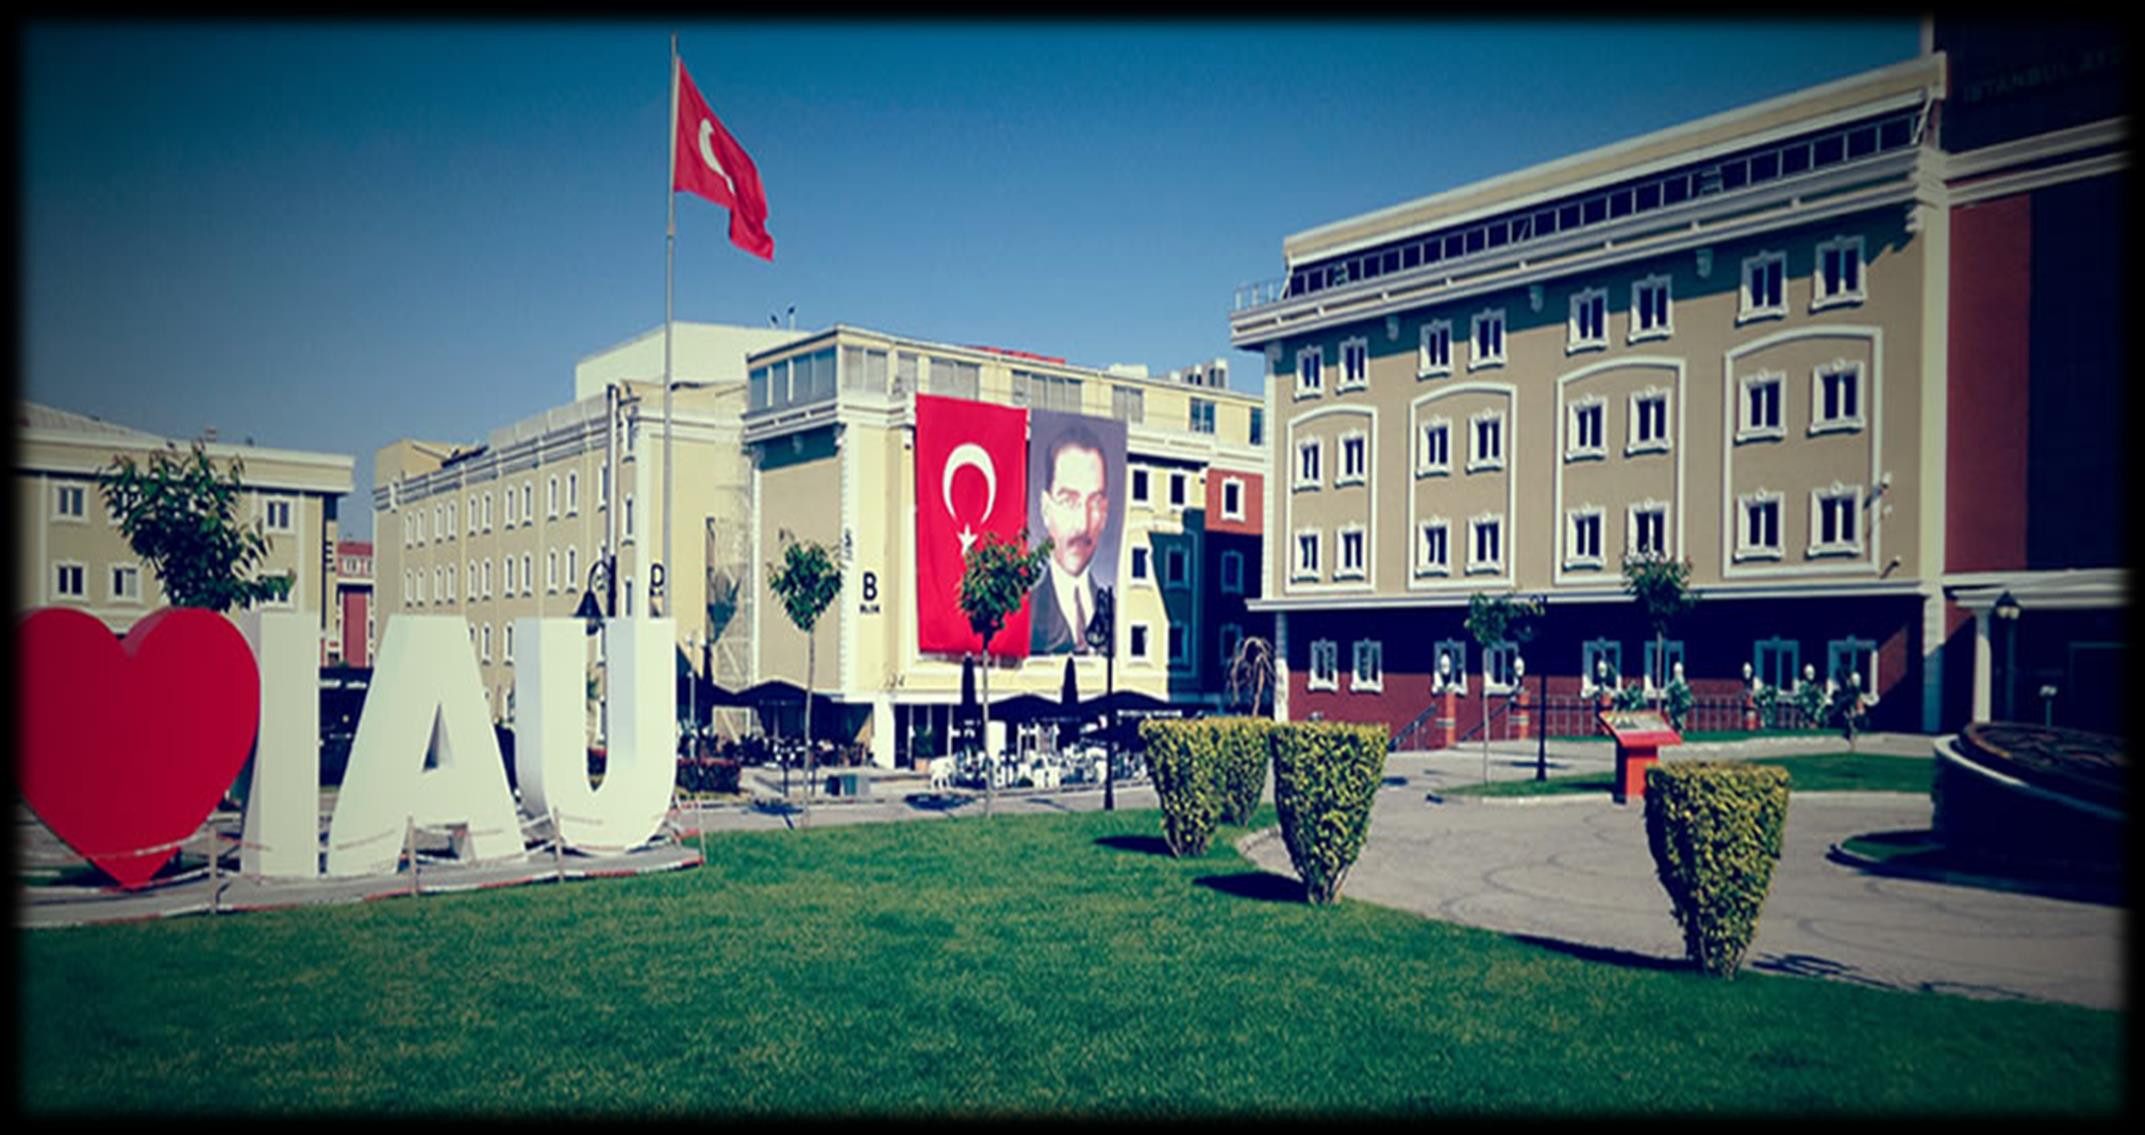 SAĞLIK HİZMETLERİ 10 KASIM ATATURK'U ANMA VE ATATURK HAFTASI 10 Kasım 2016 İstanbul Aydın Üniversitesi(İAÜ) Mustafa Kemal Atatürk ün 78. ölüm yıldönümü dolayısıyla Atatürk ü Anma Töreni düzenledi.